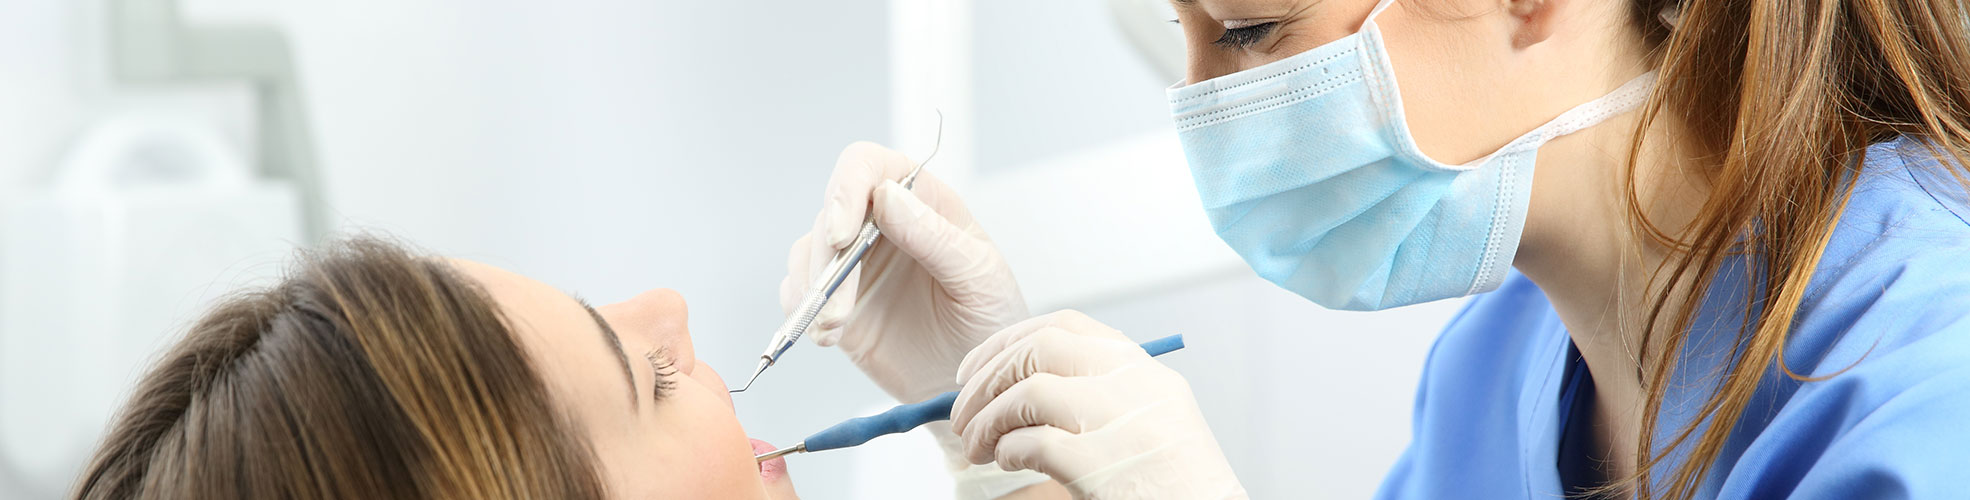 endodonzia e terapia canalare